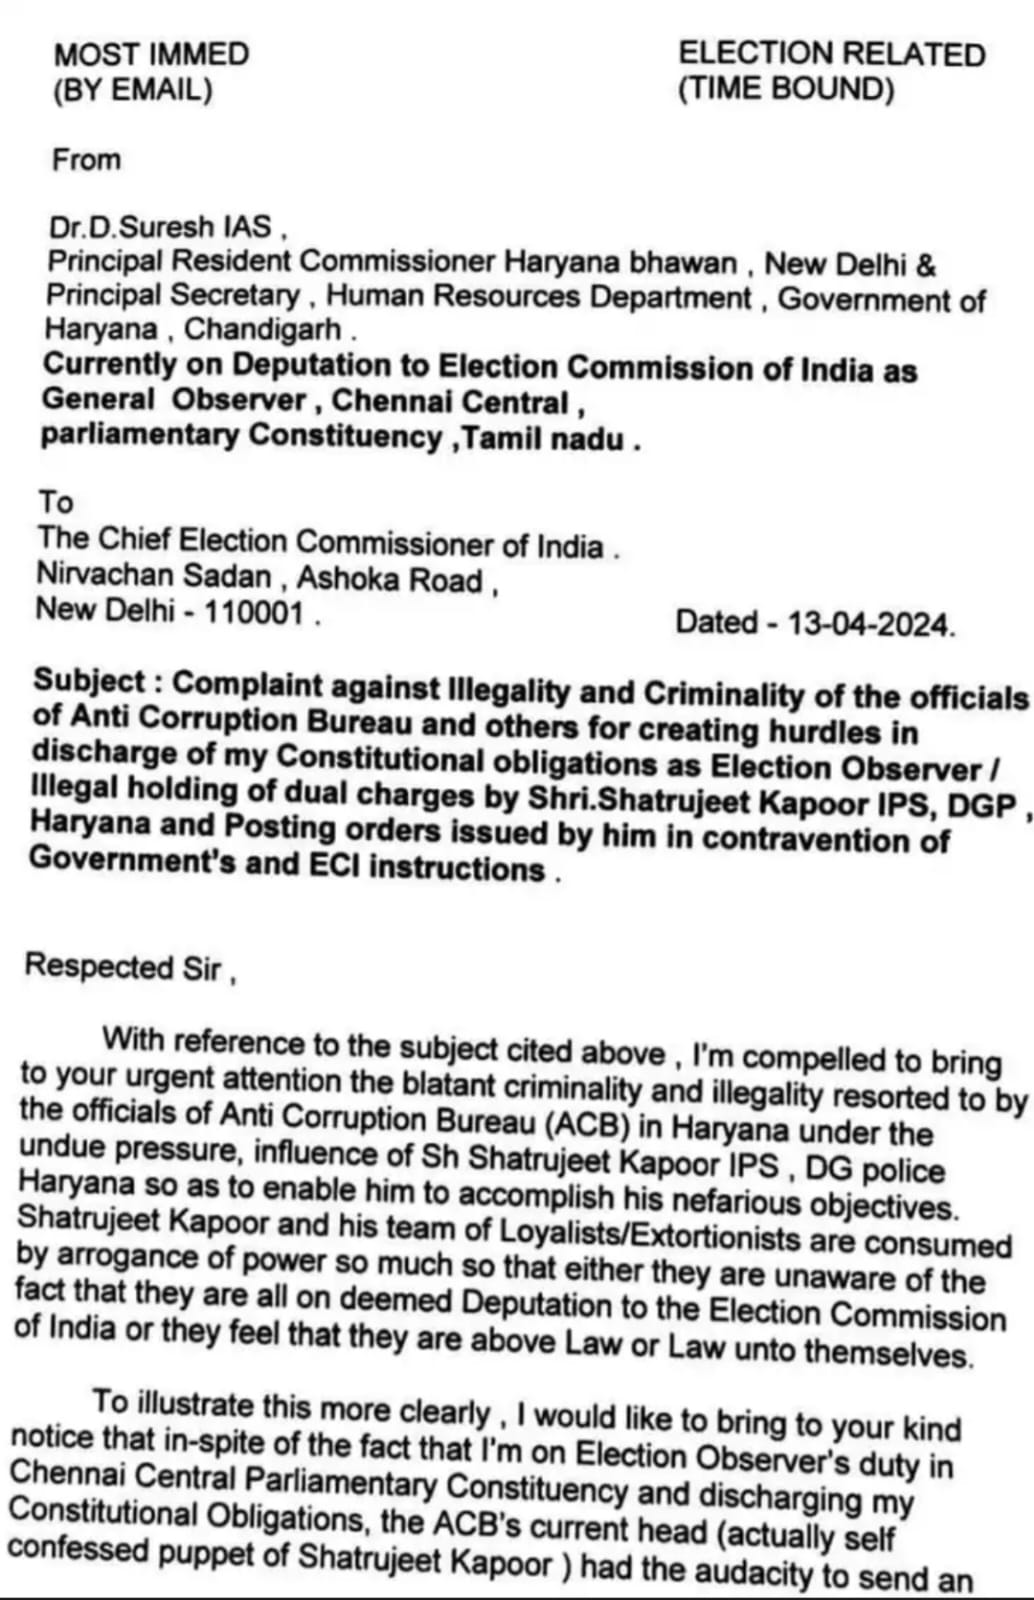 Complaint against Haryana DGP